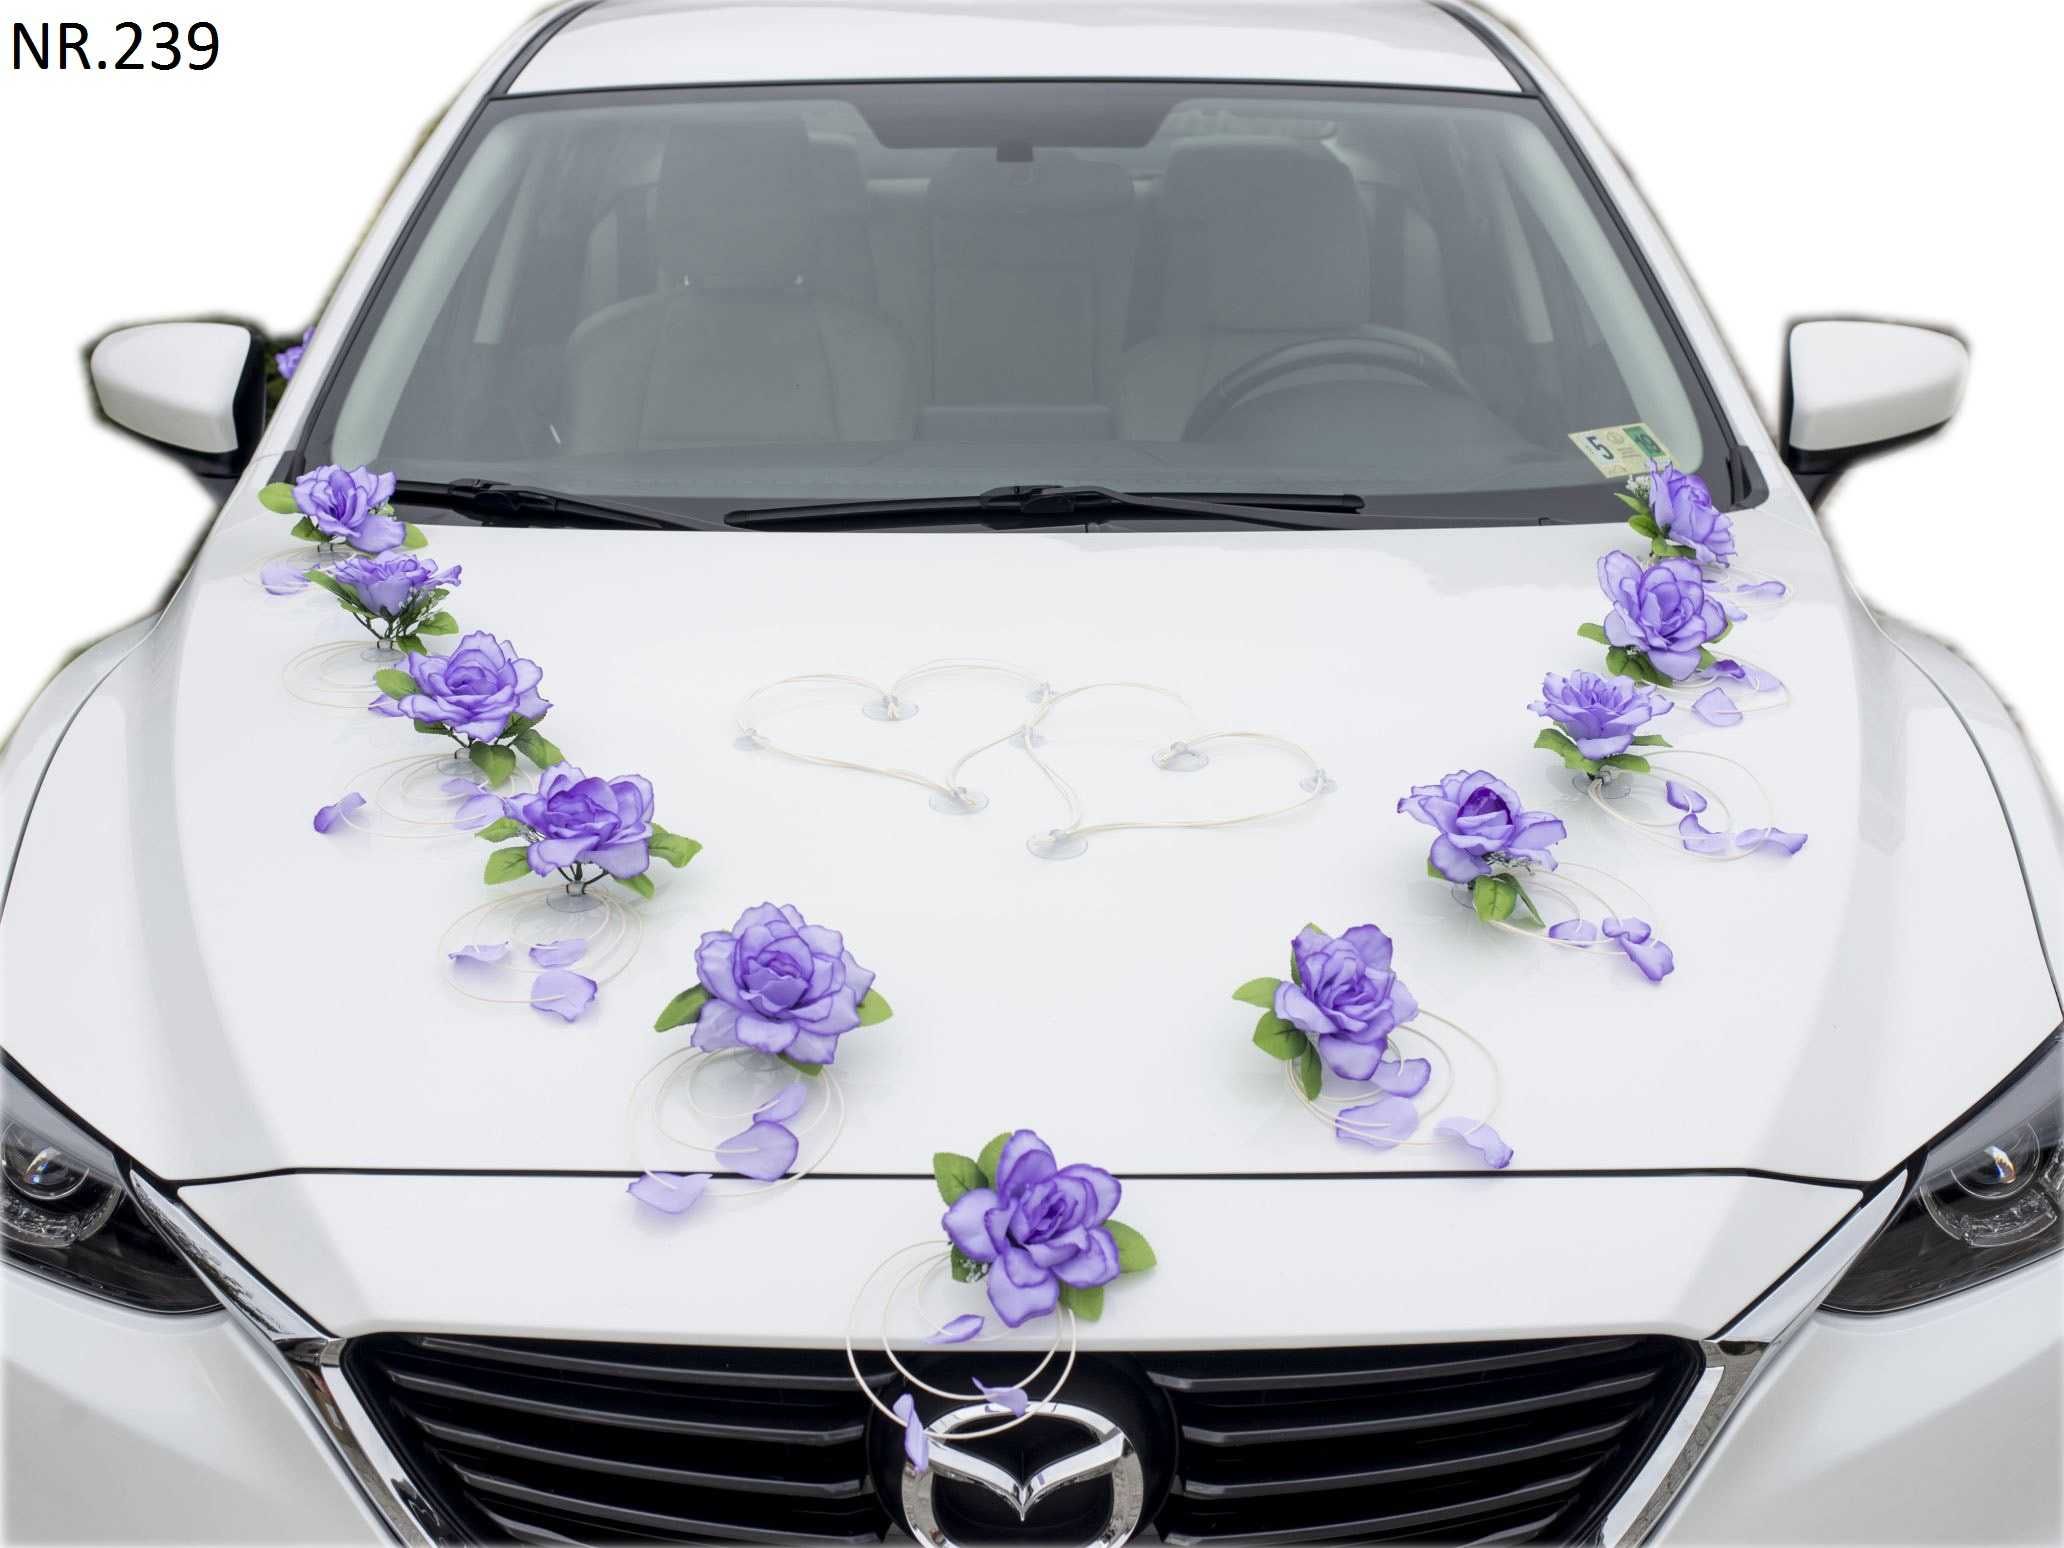 BOGATA Fioletowa dekoracja na samochód. Ozdoba na auto do ślubu 239